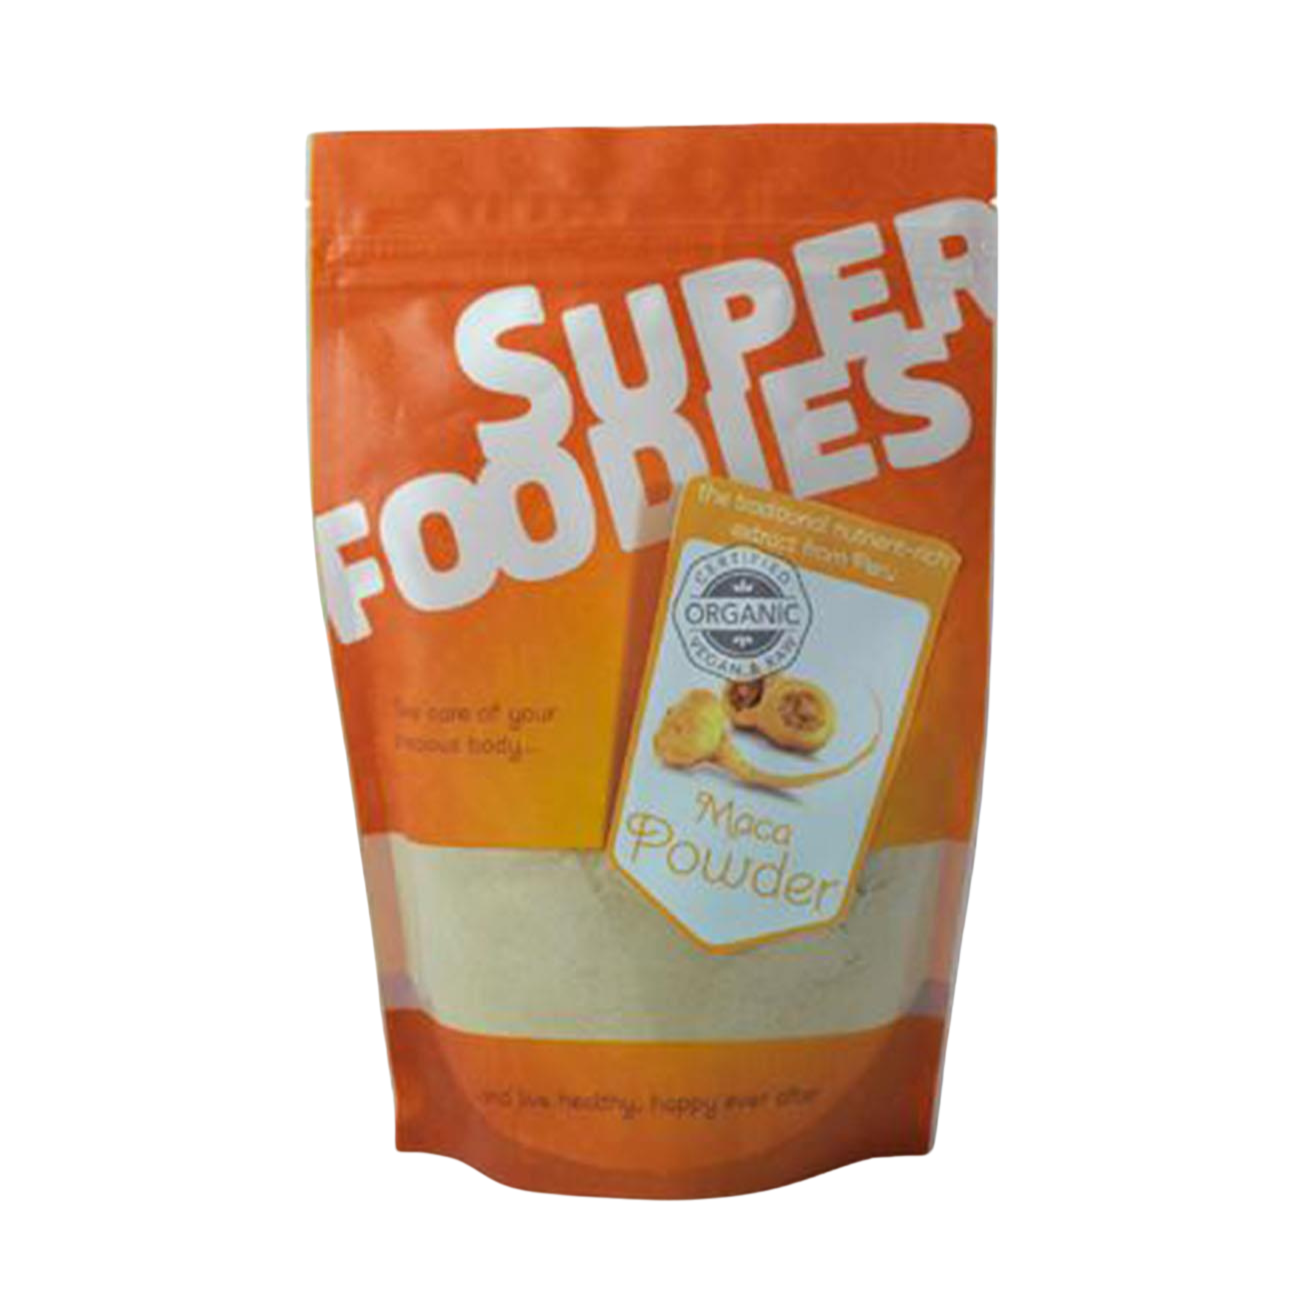 Superfoodies Organic Maca Powder 250g